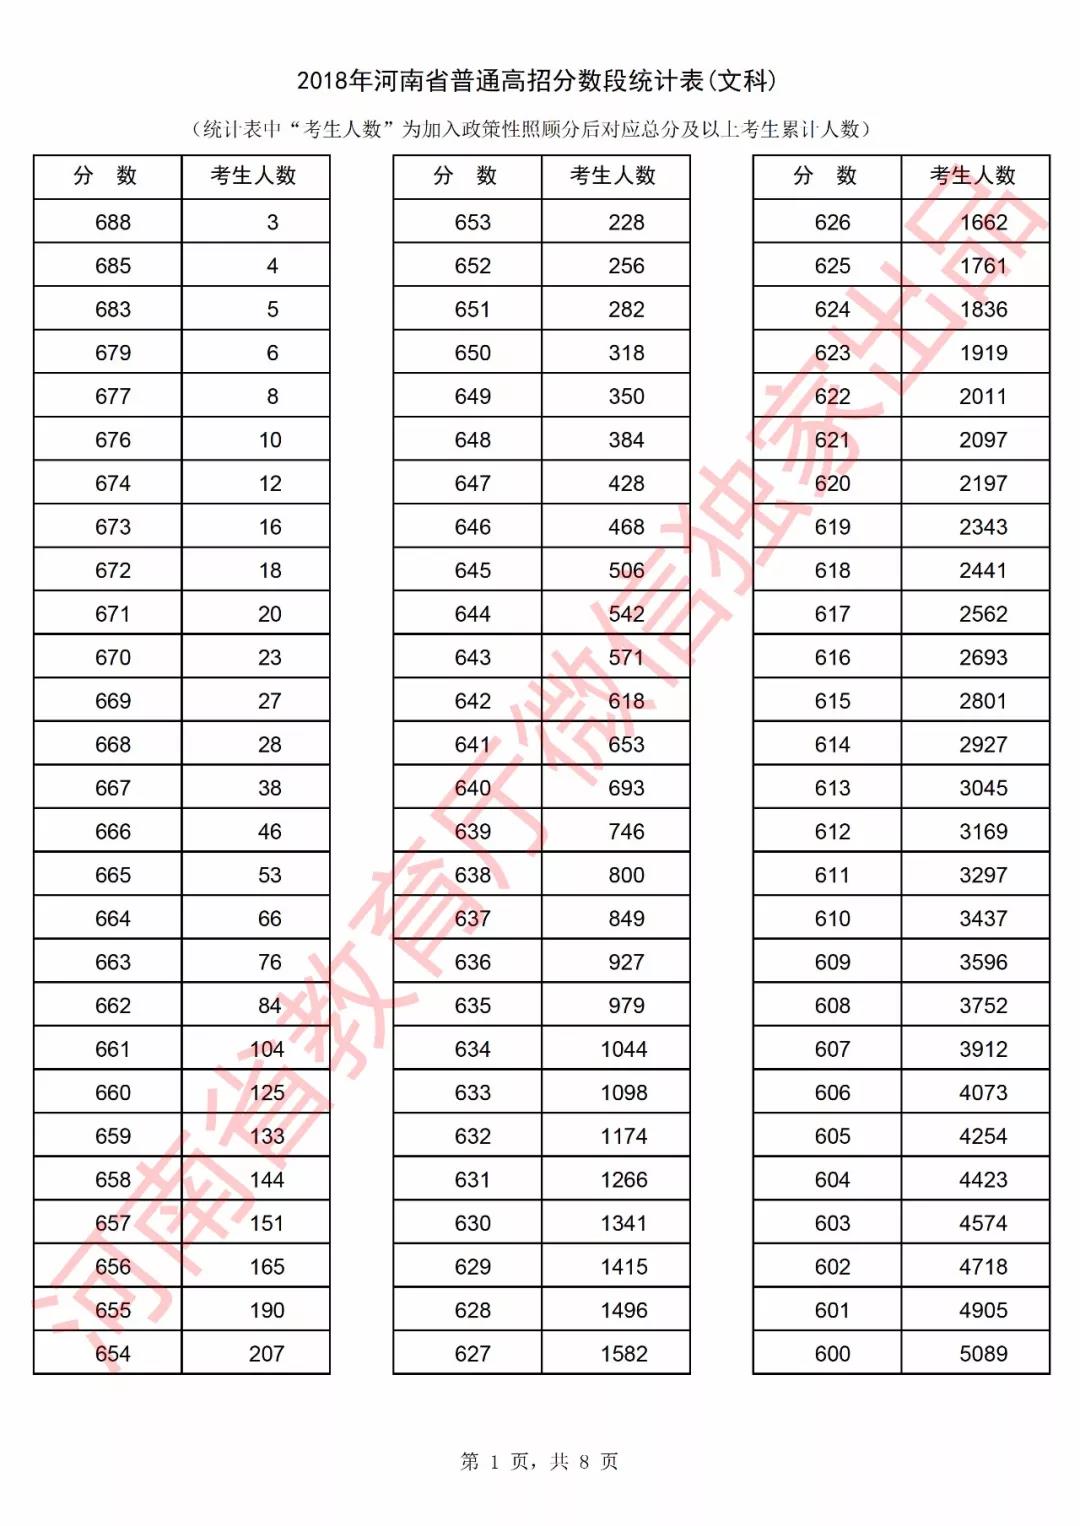 2018年河南高考分数段统计表(文科)